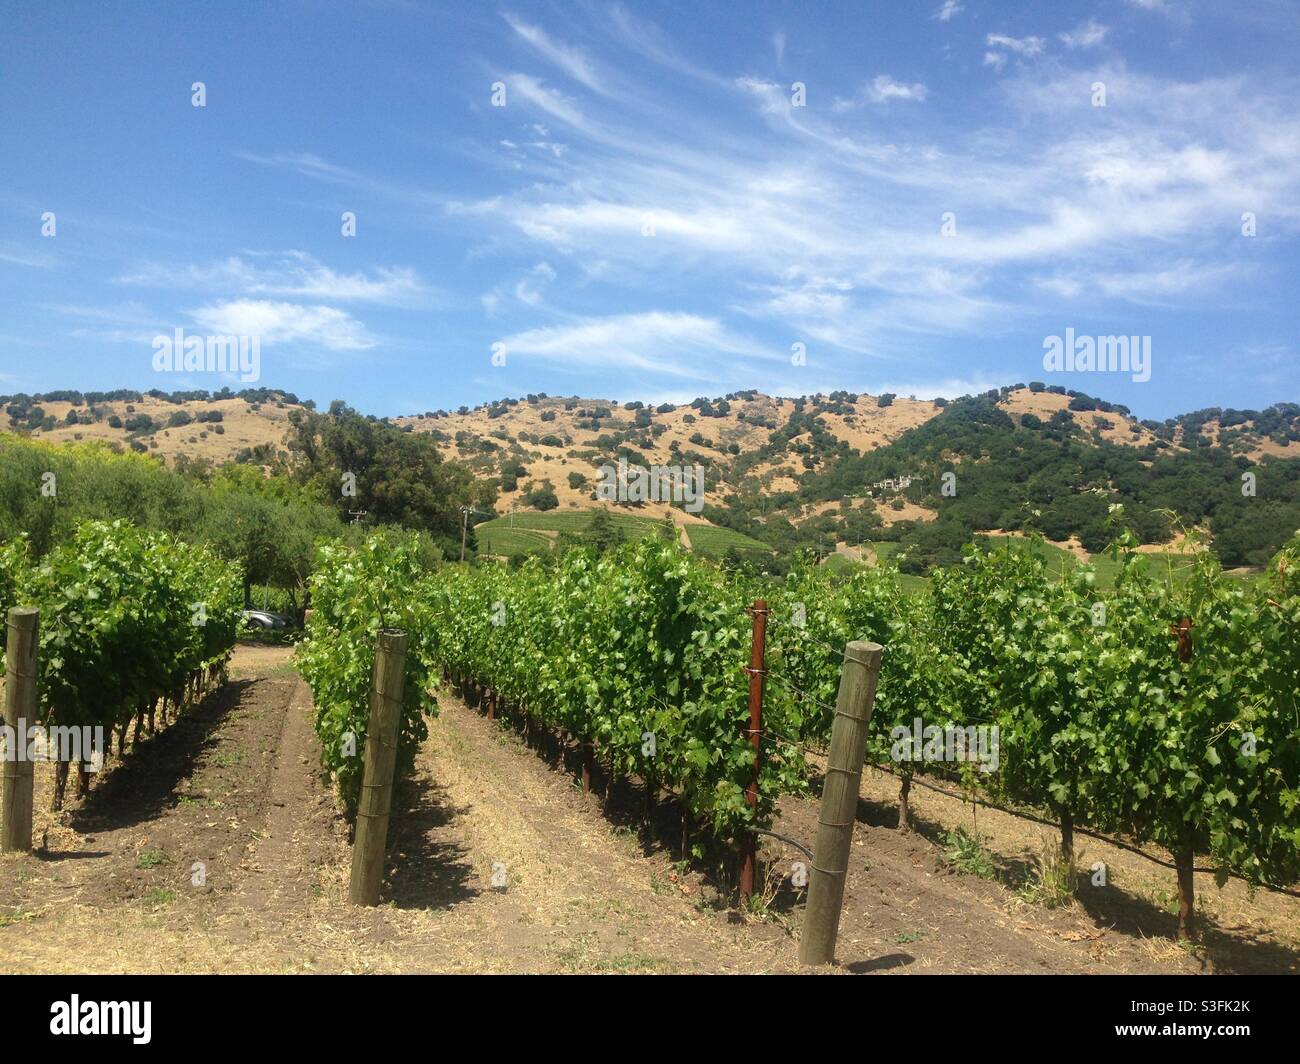 Napa Valley winery Stock Photo